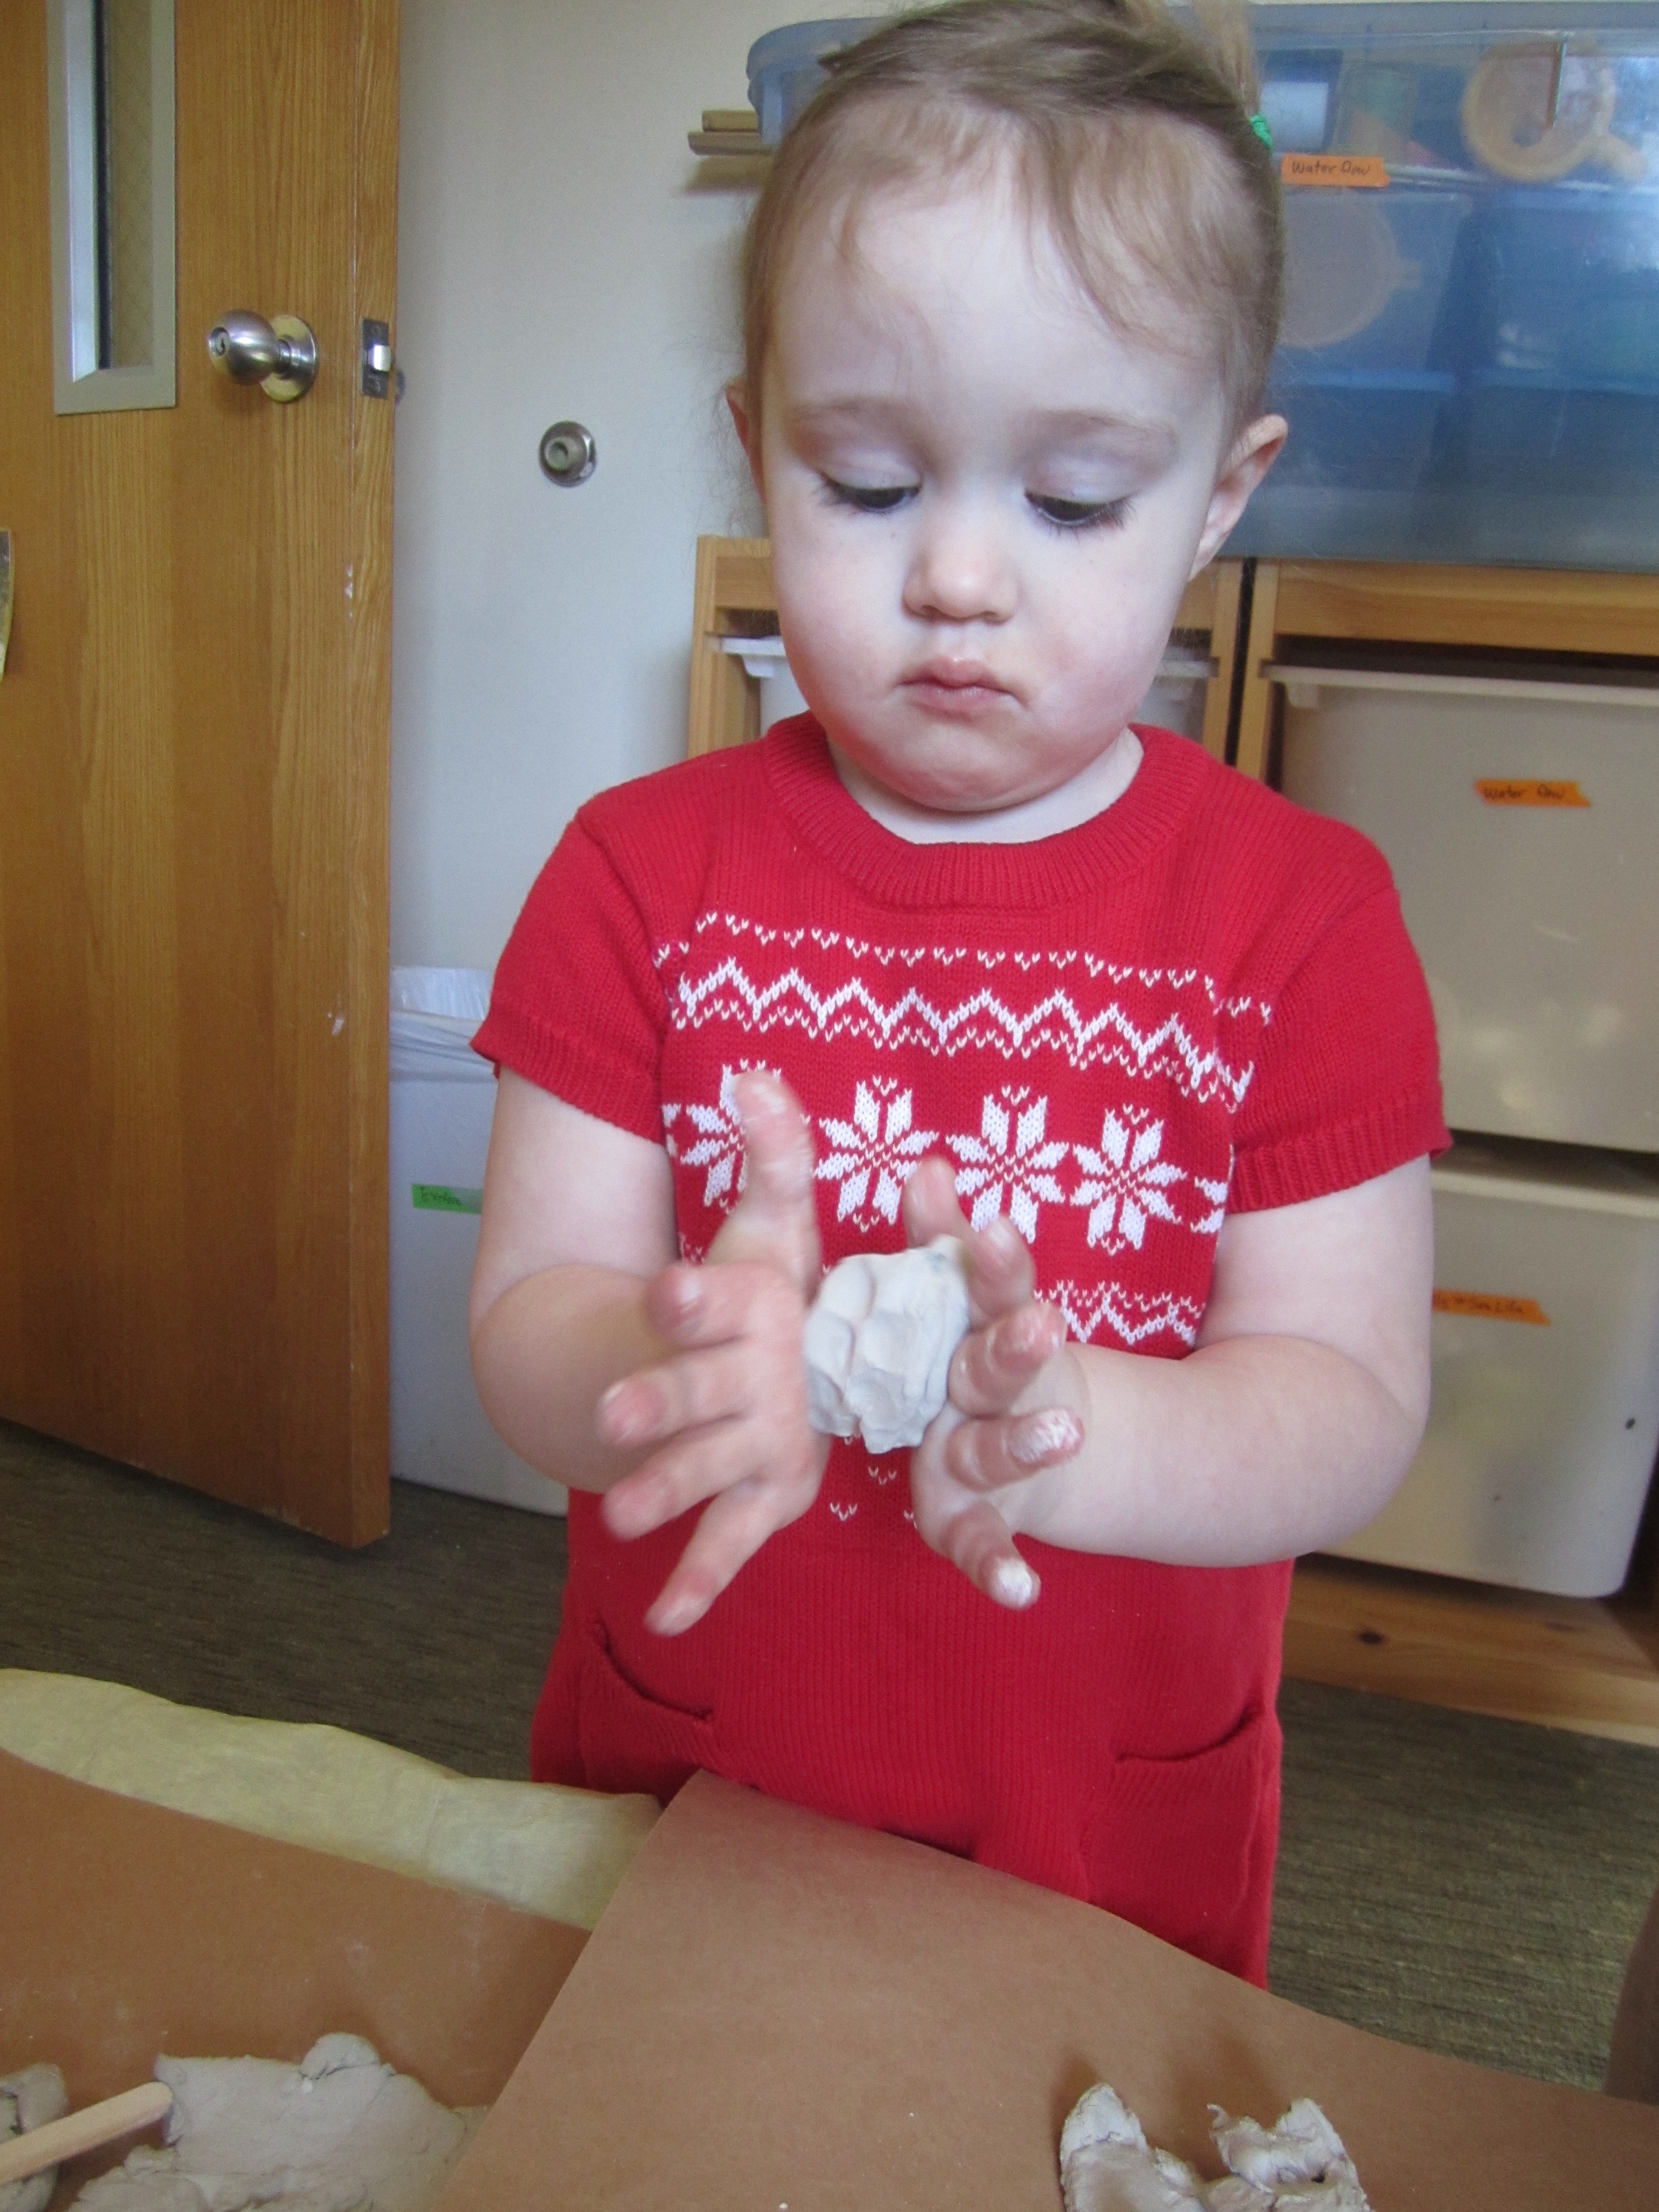 Child rolls clay between her hands.